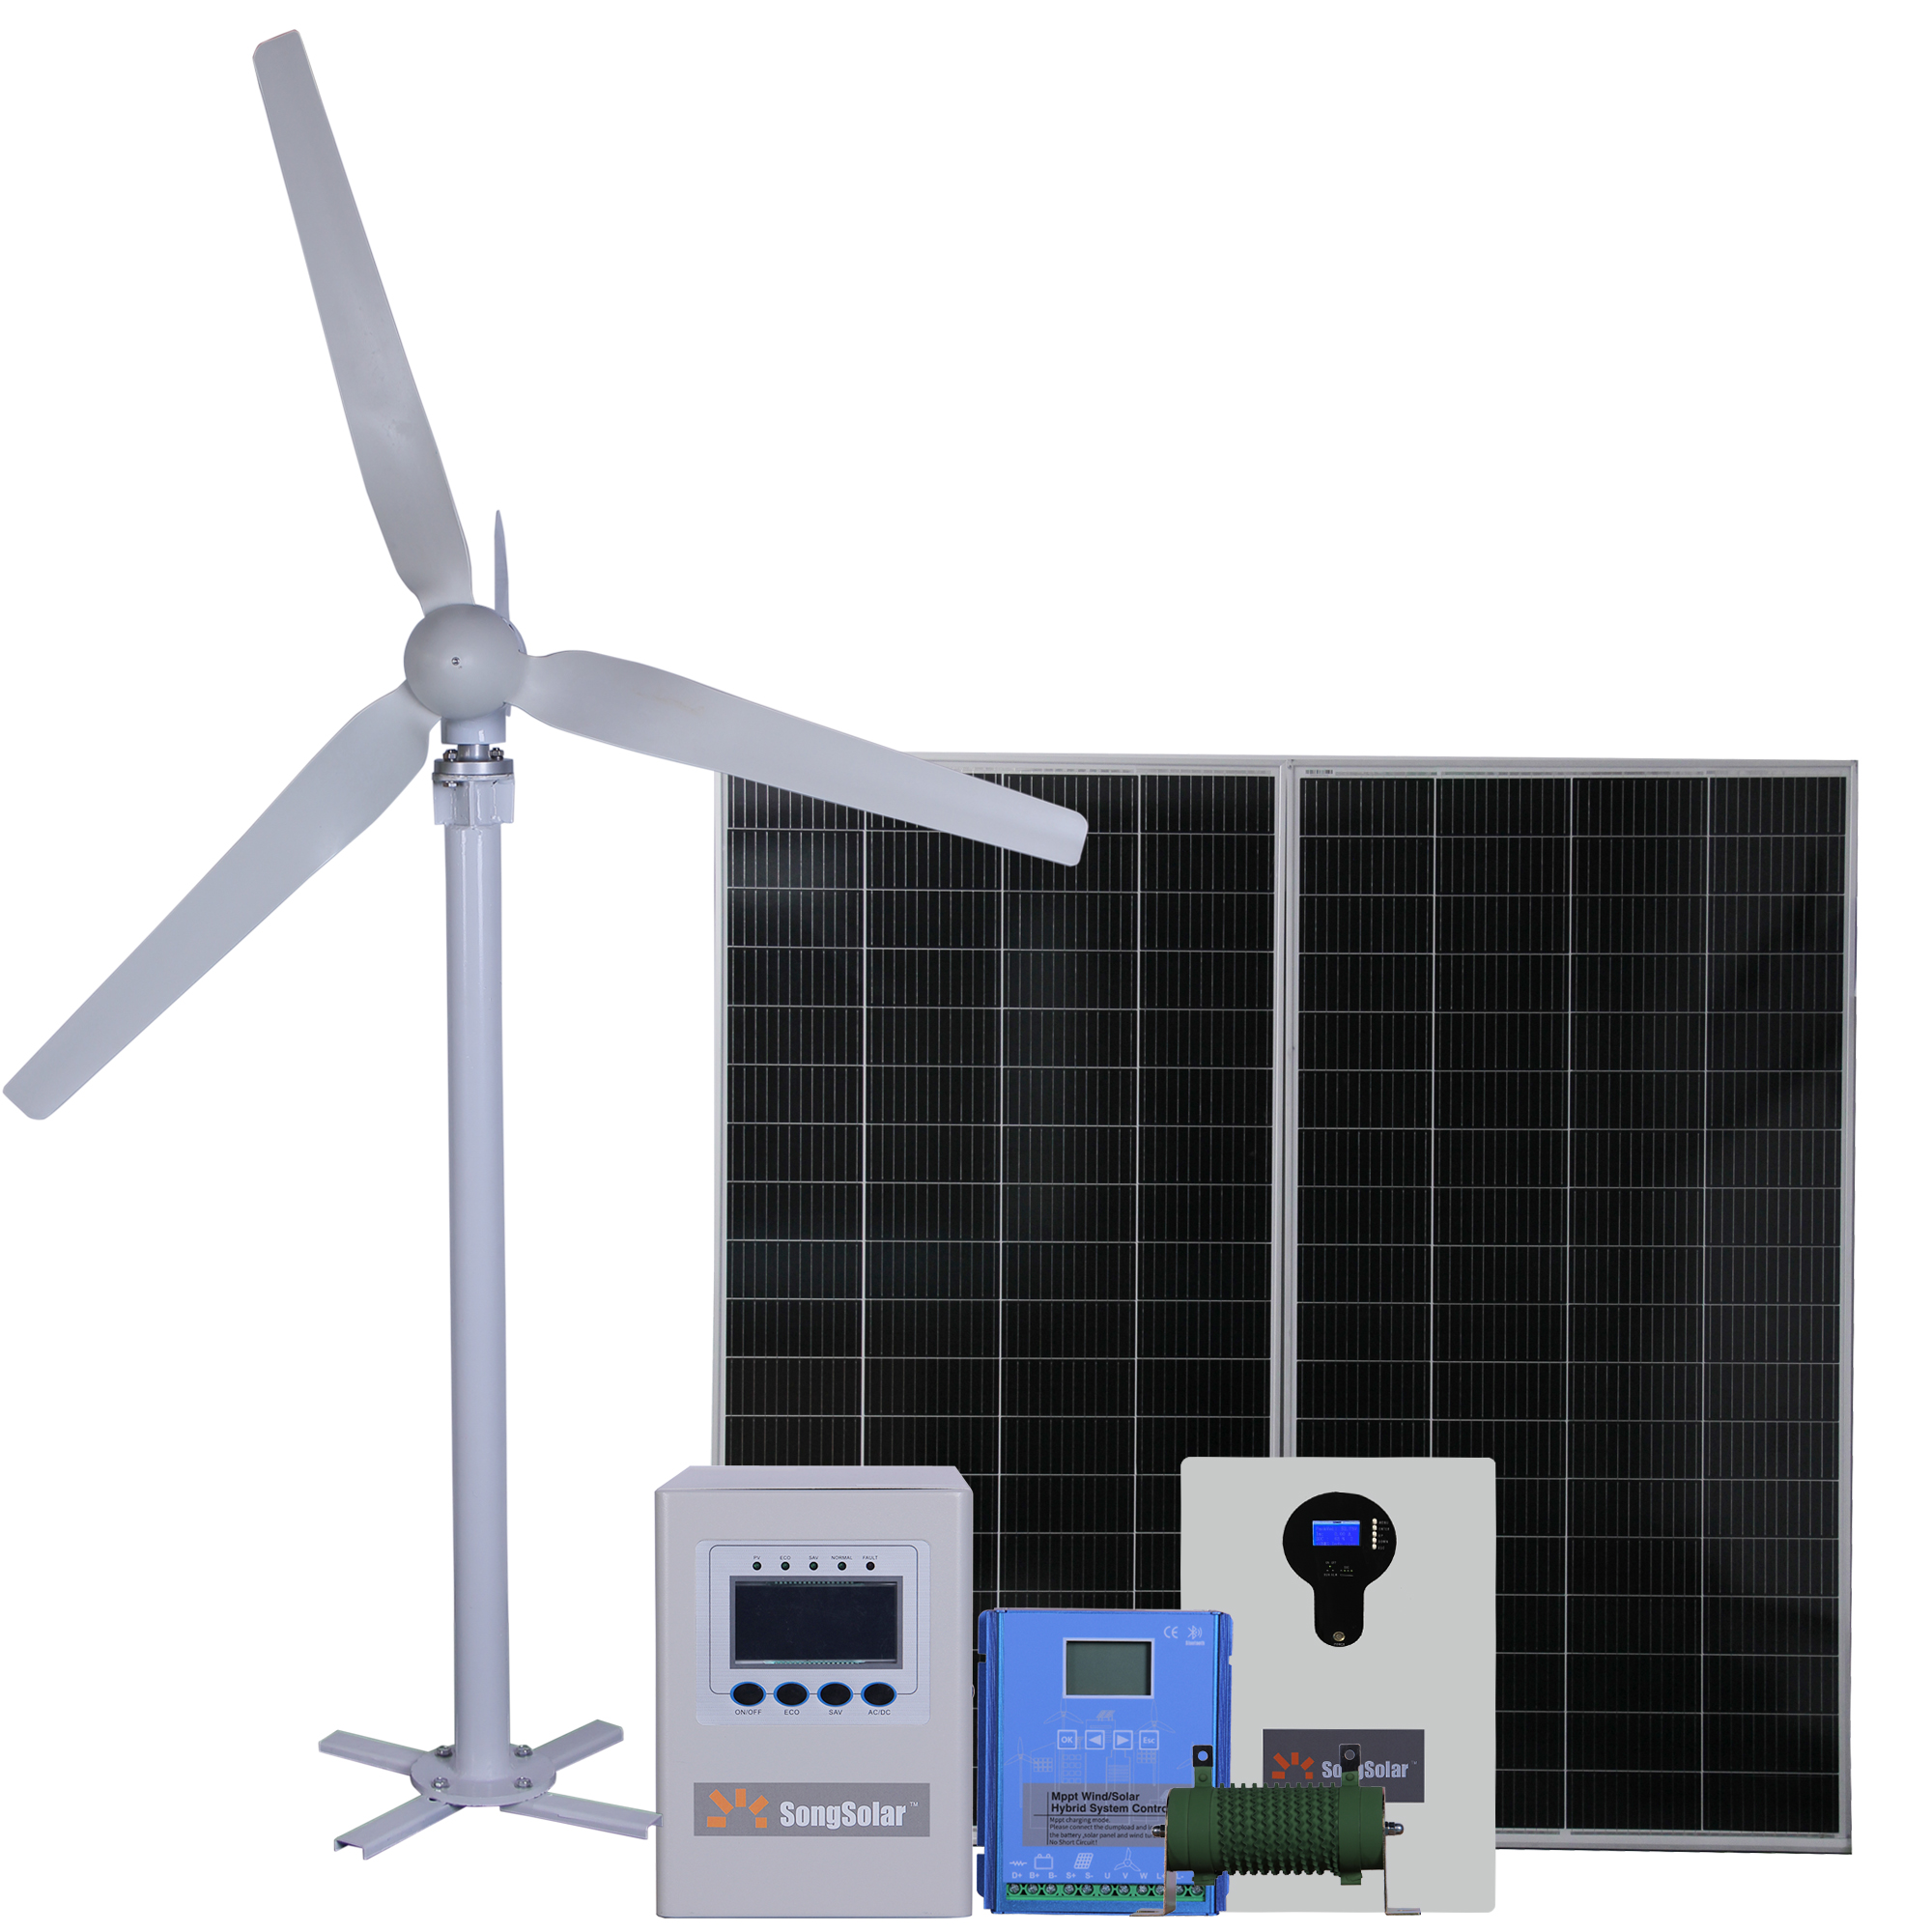 200W -100kW kugadzirwa kwesimba remhepo Vertical Axis & Horizontal Axis Wind Turbine yeMhepo Energy Powery Systems